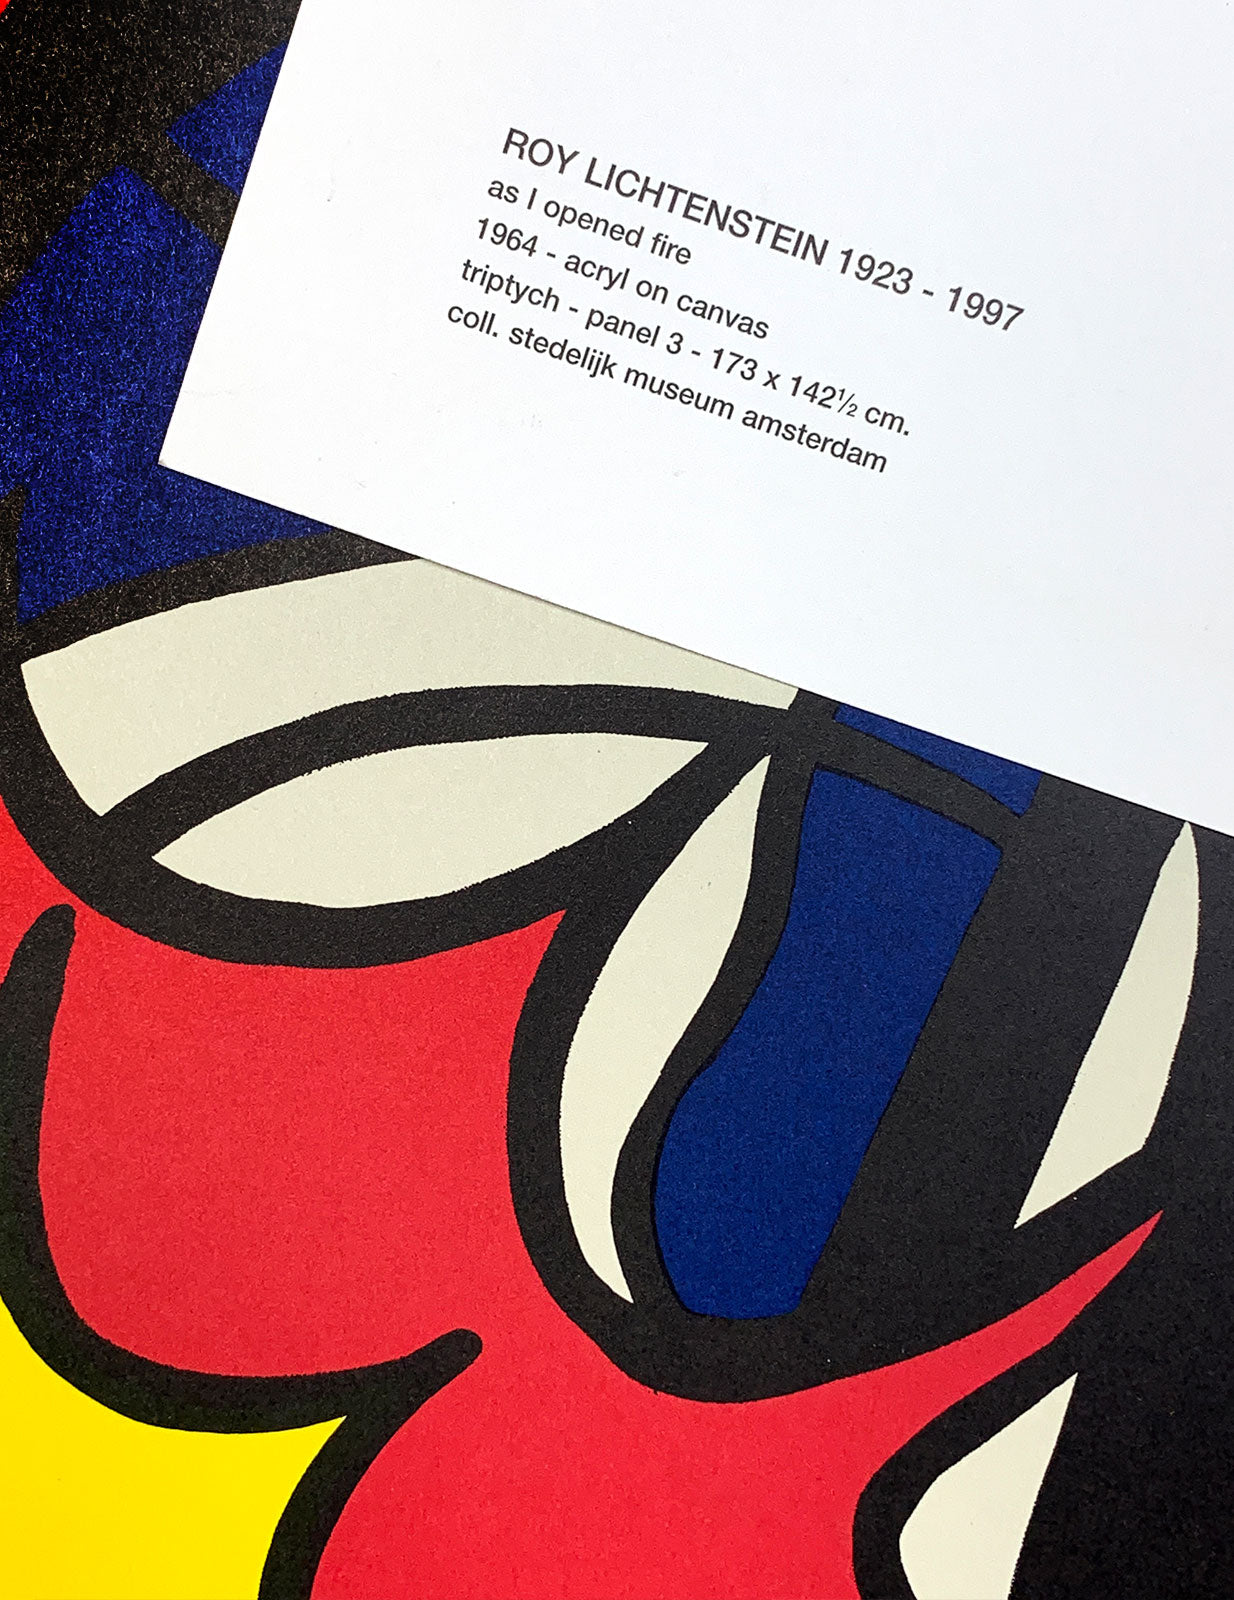 Roy Lichtenstein – As I opened fire